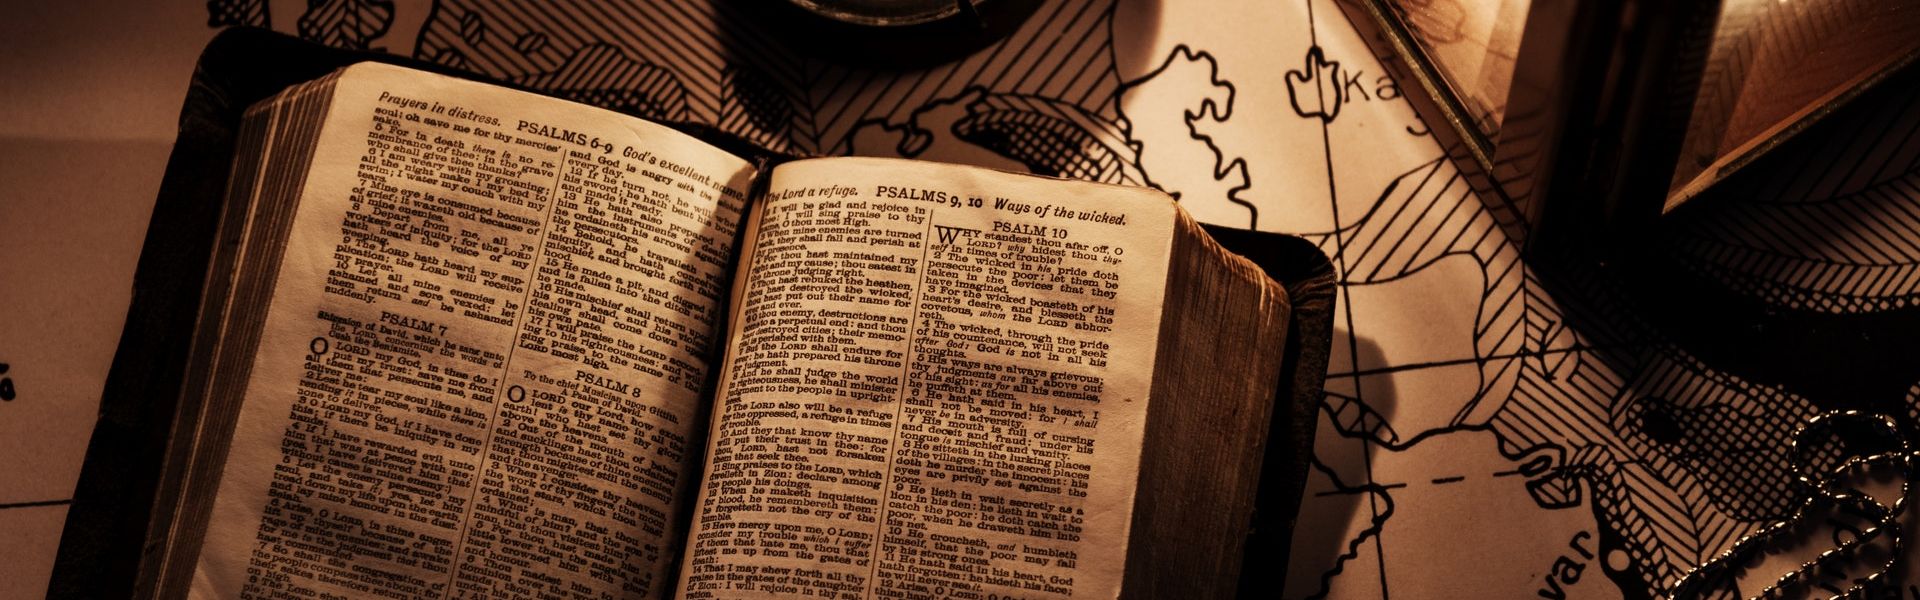 Open bijbel op zeekaart bij het versje "Behouden vaart" van Paul Schrijft